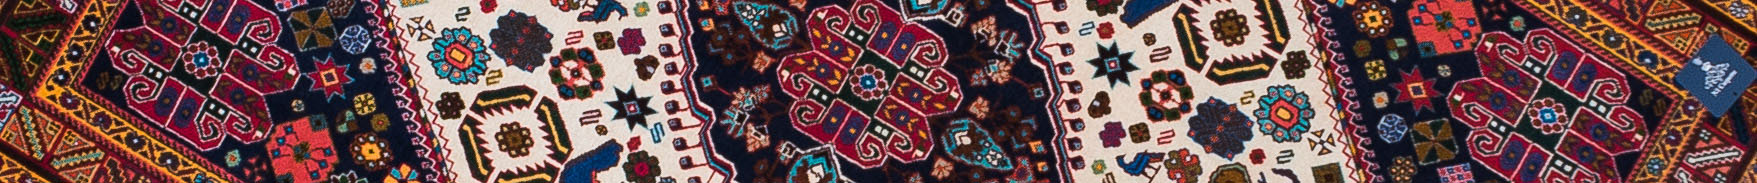 Bidjar Persian Carpet Rug N1Carpet Canada Montreal Tapis Persan 2990